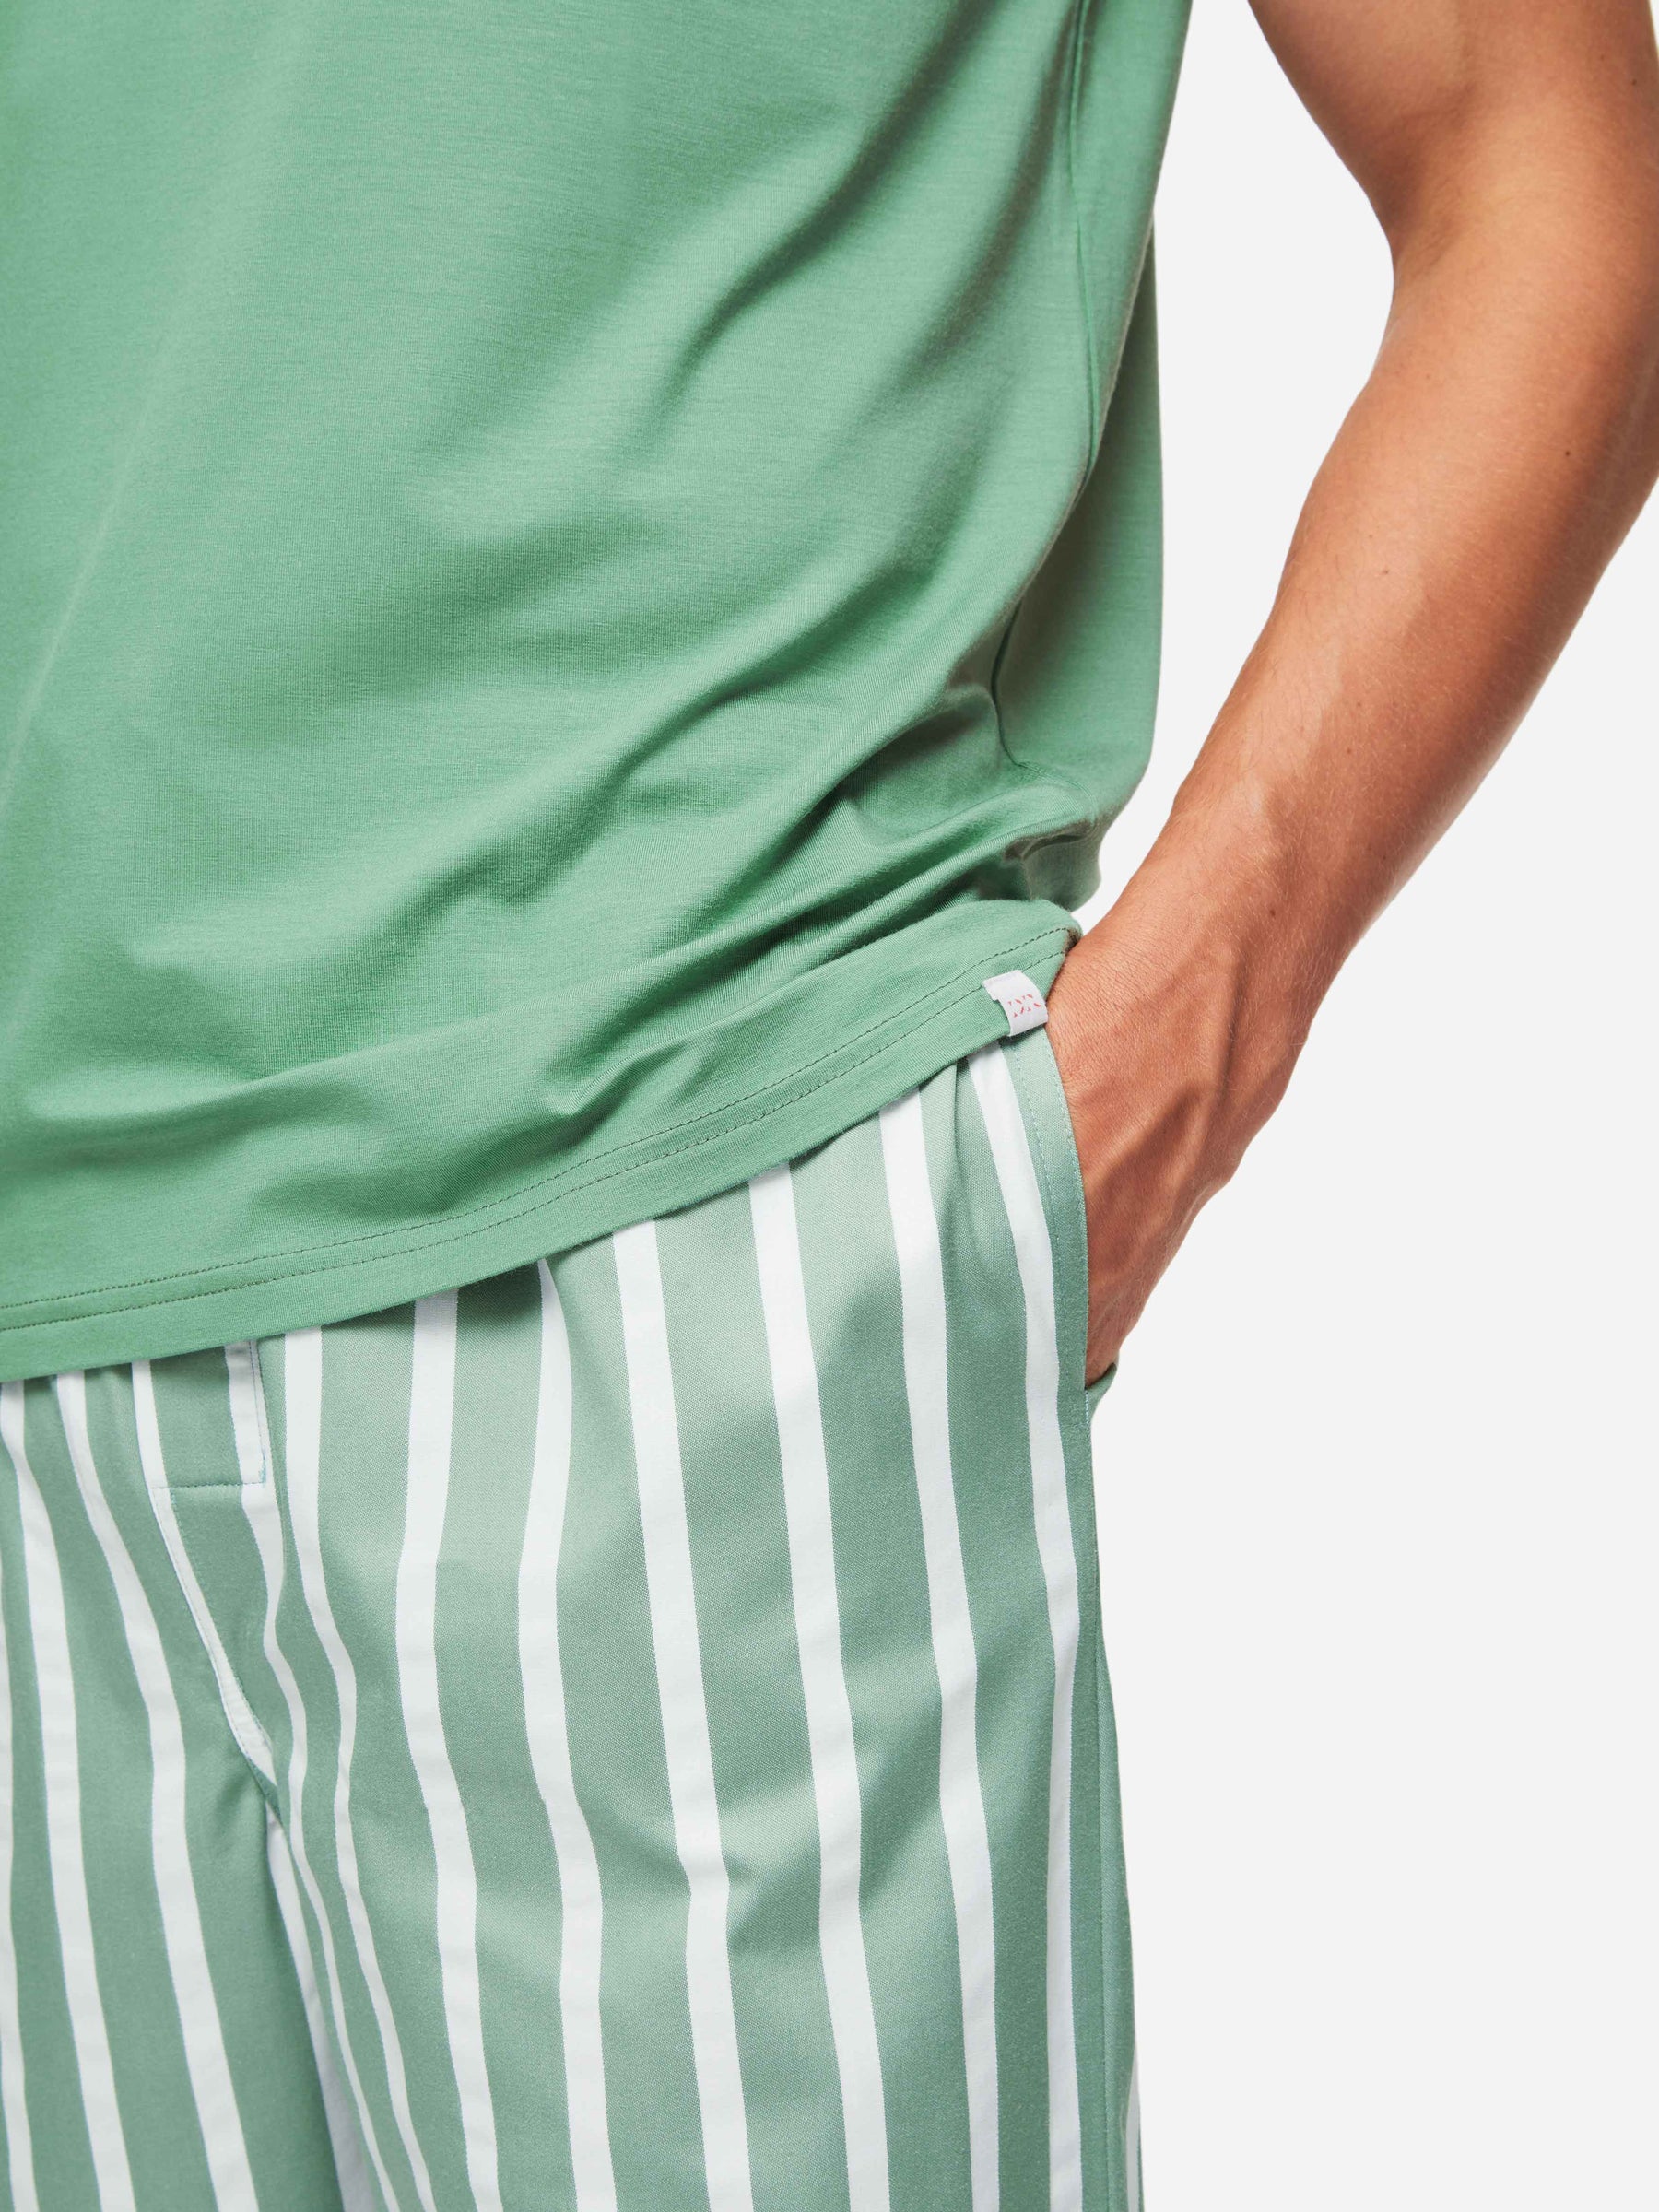 Men's Lounge Trousers Royal 219 Cotton Green